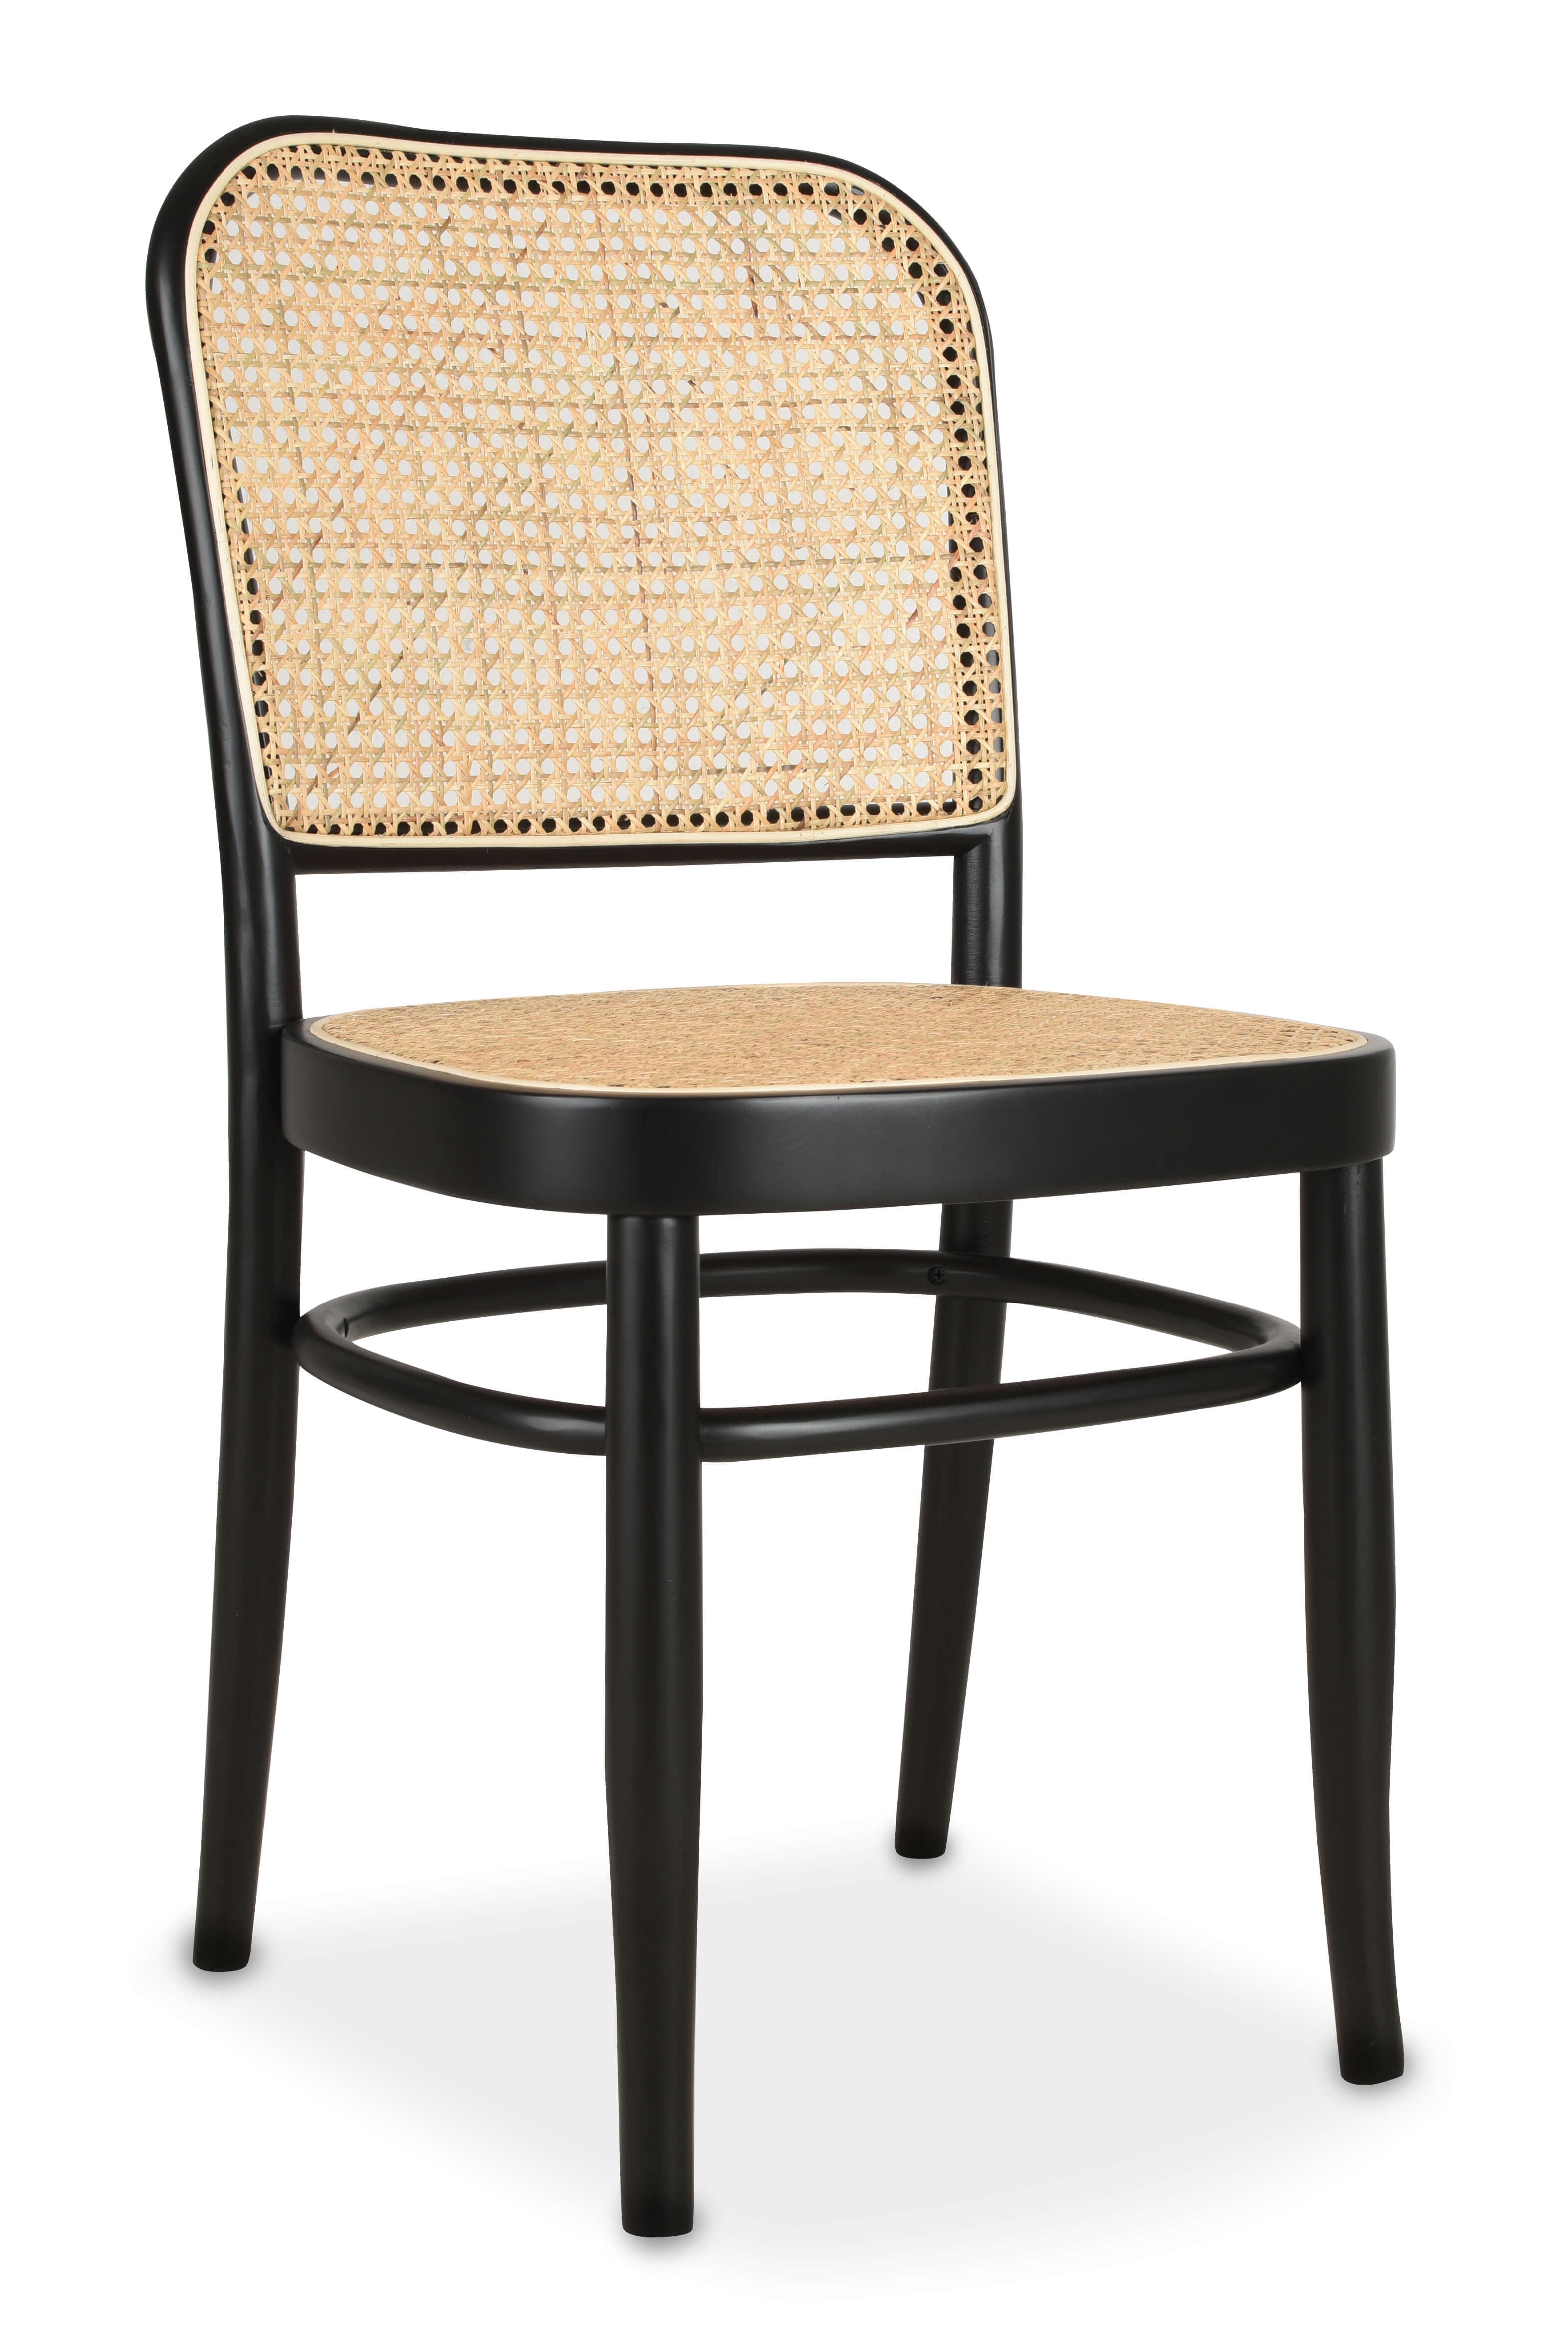 Email schrijven Contractie Gewend aan Moulin stoel in natuurlijk rotan - Rotan stoelen - Design meubelen